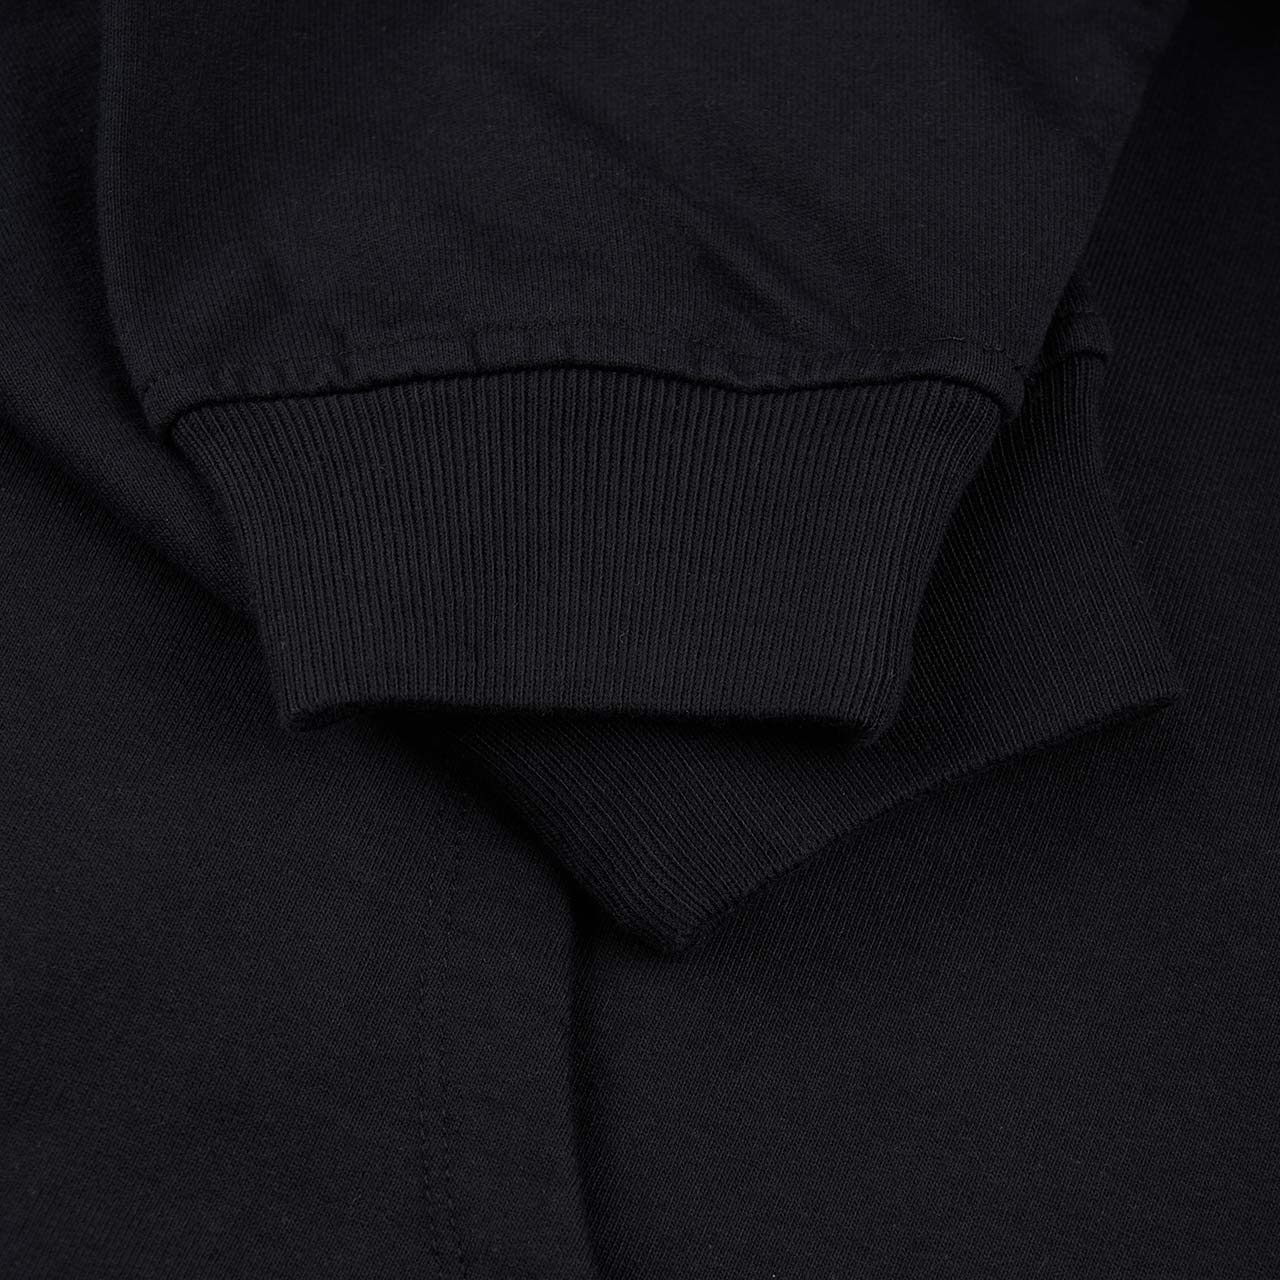 rassvet rassvet window hoodie (black)